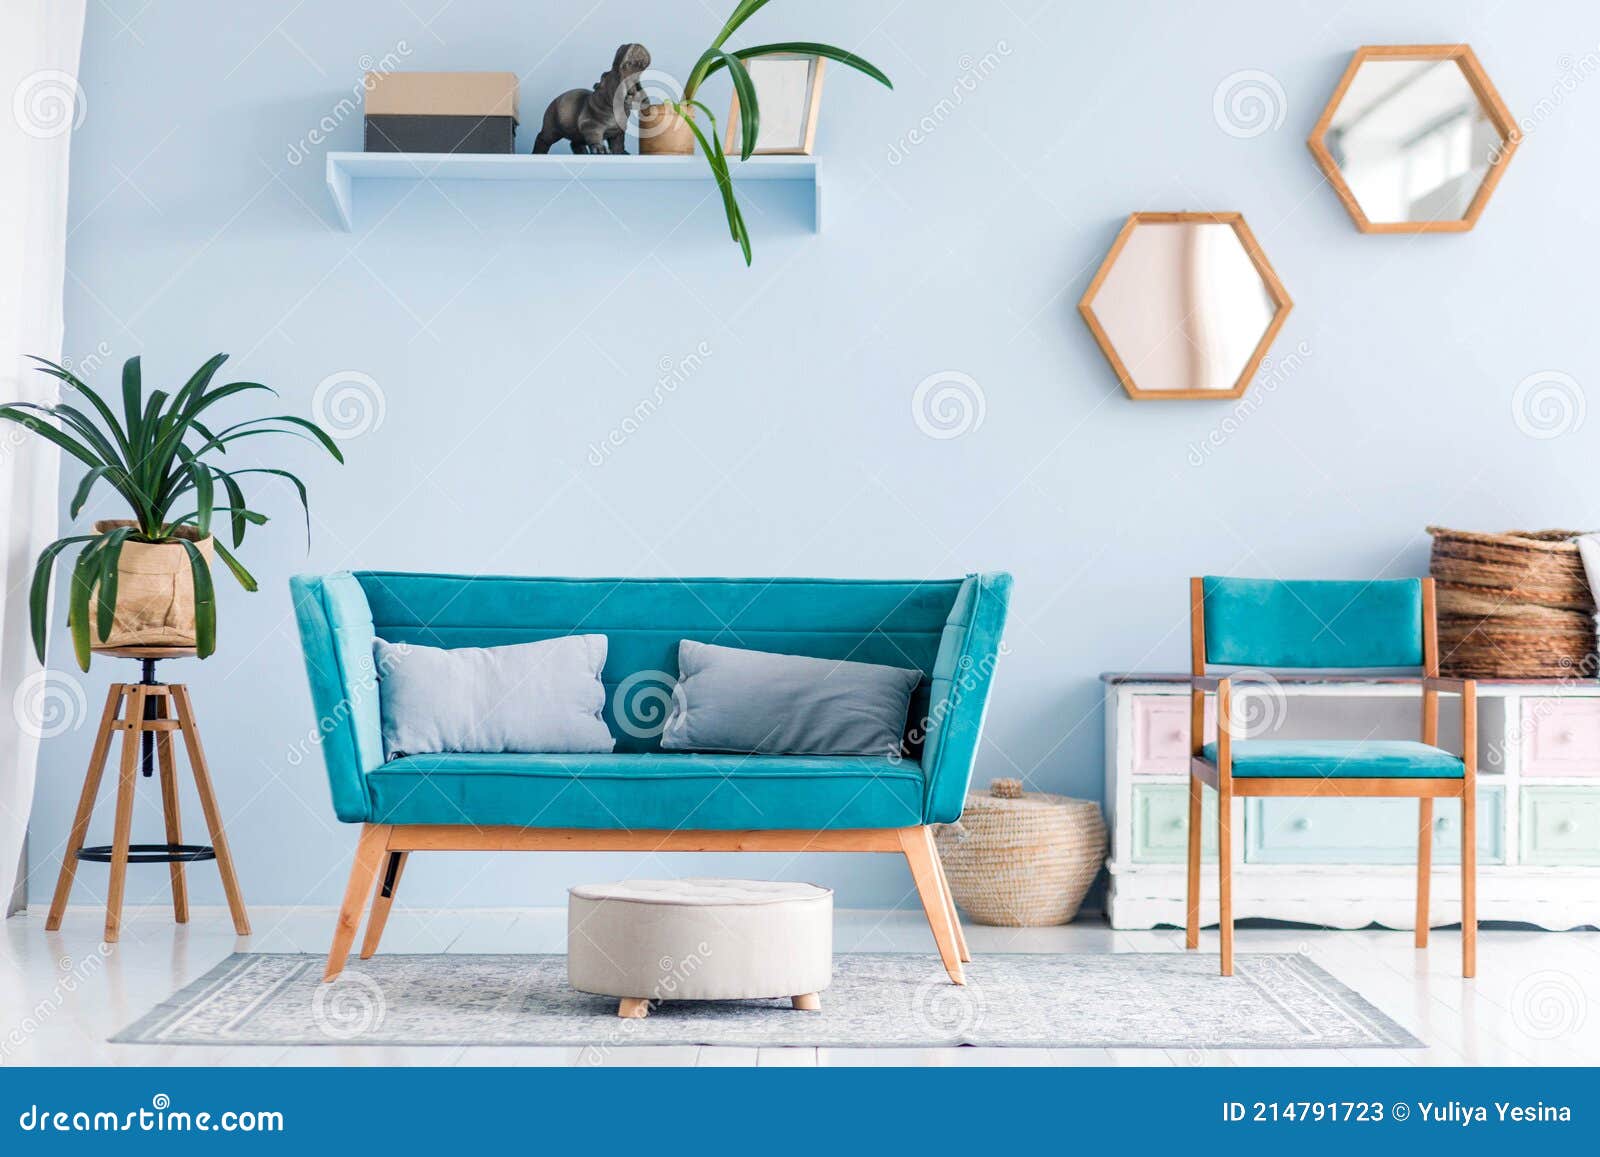 por qué Raramente Tutor Sala De Estar Con Plantas Muebles De Color Azul Moderno Y Decoración Imagen  de archivo - Imagen de hotel, brillante: 214791723